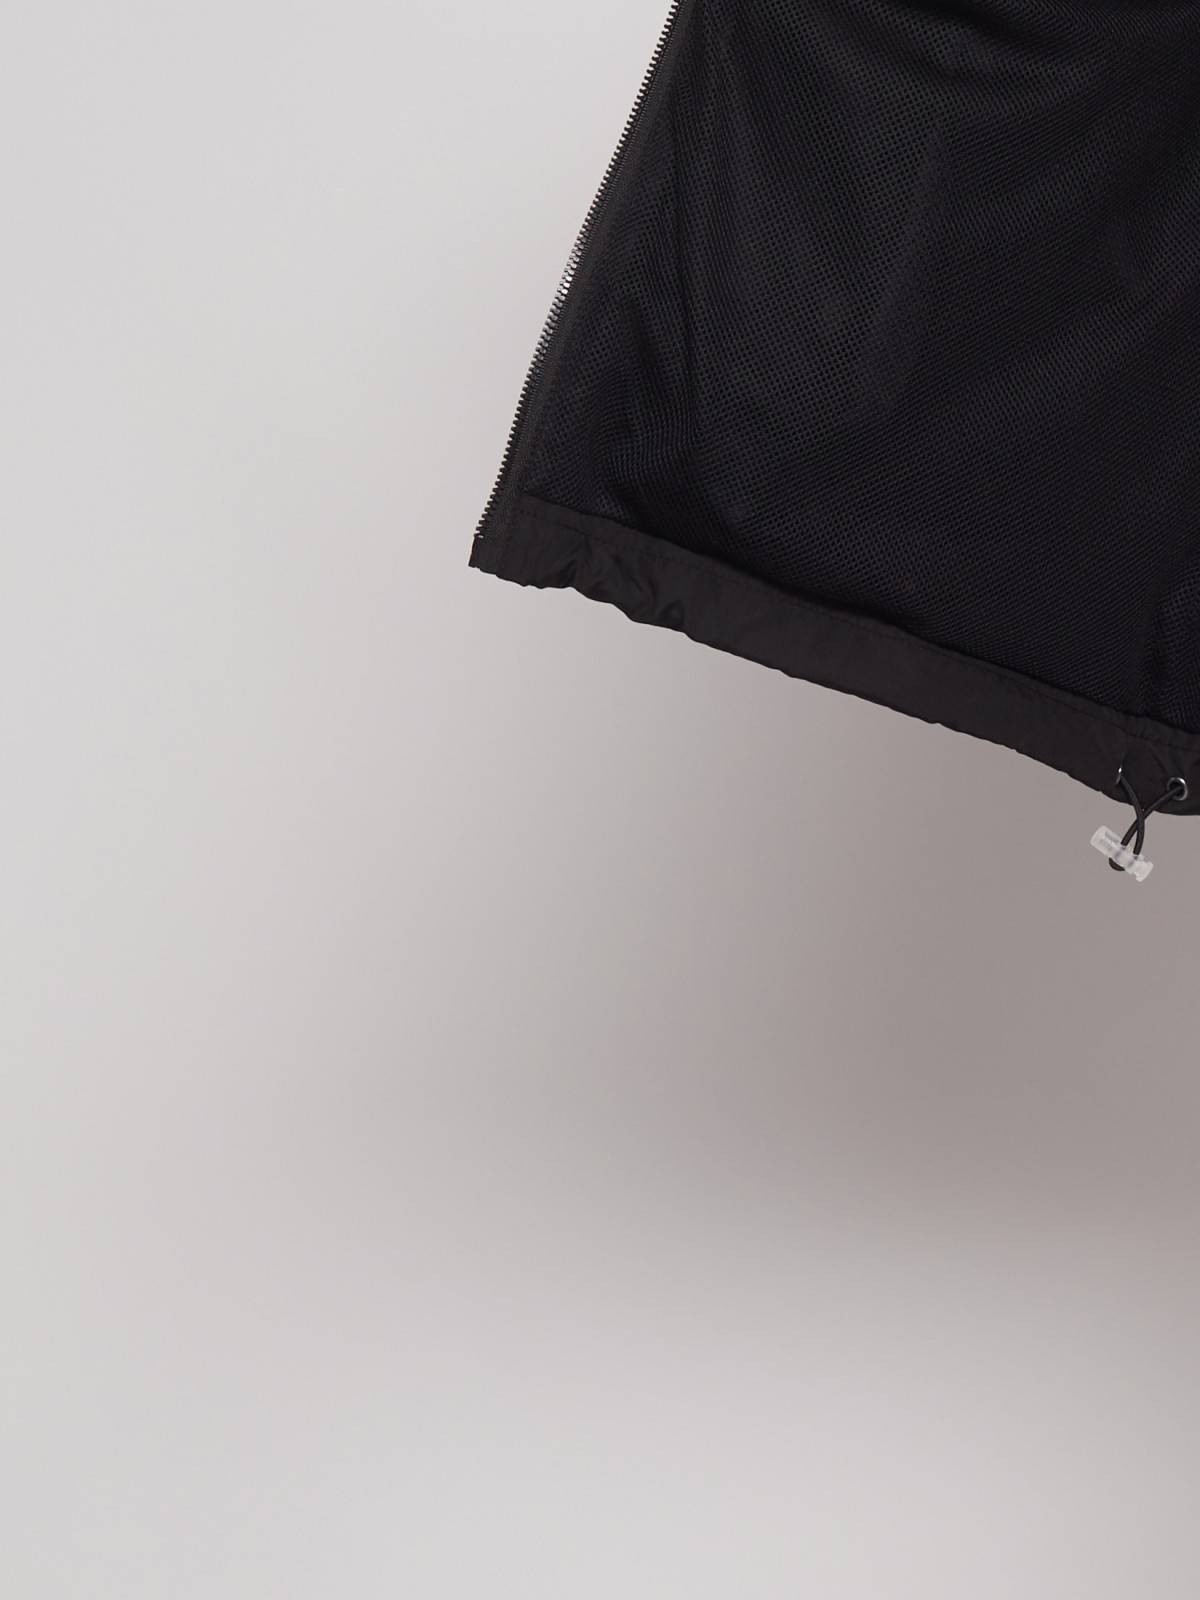 Куртка-ветровка с капюшоном zolla 022215602024, цвет черный, размер XS - фото 4